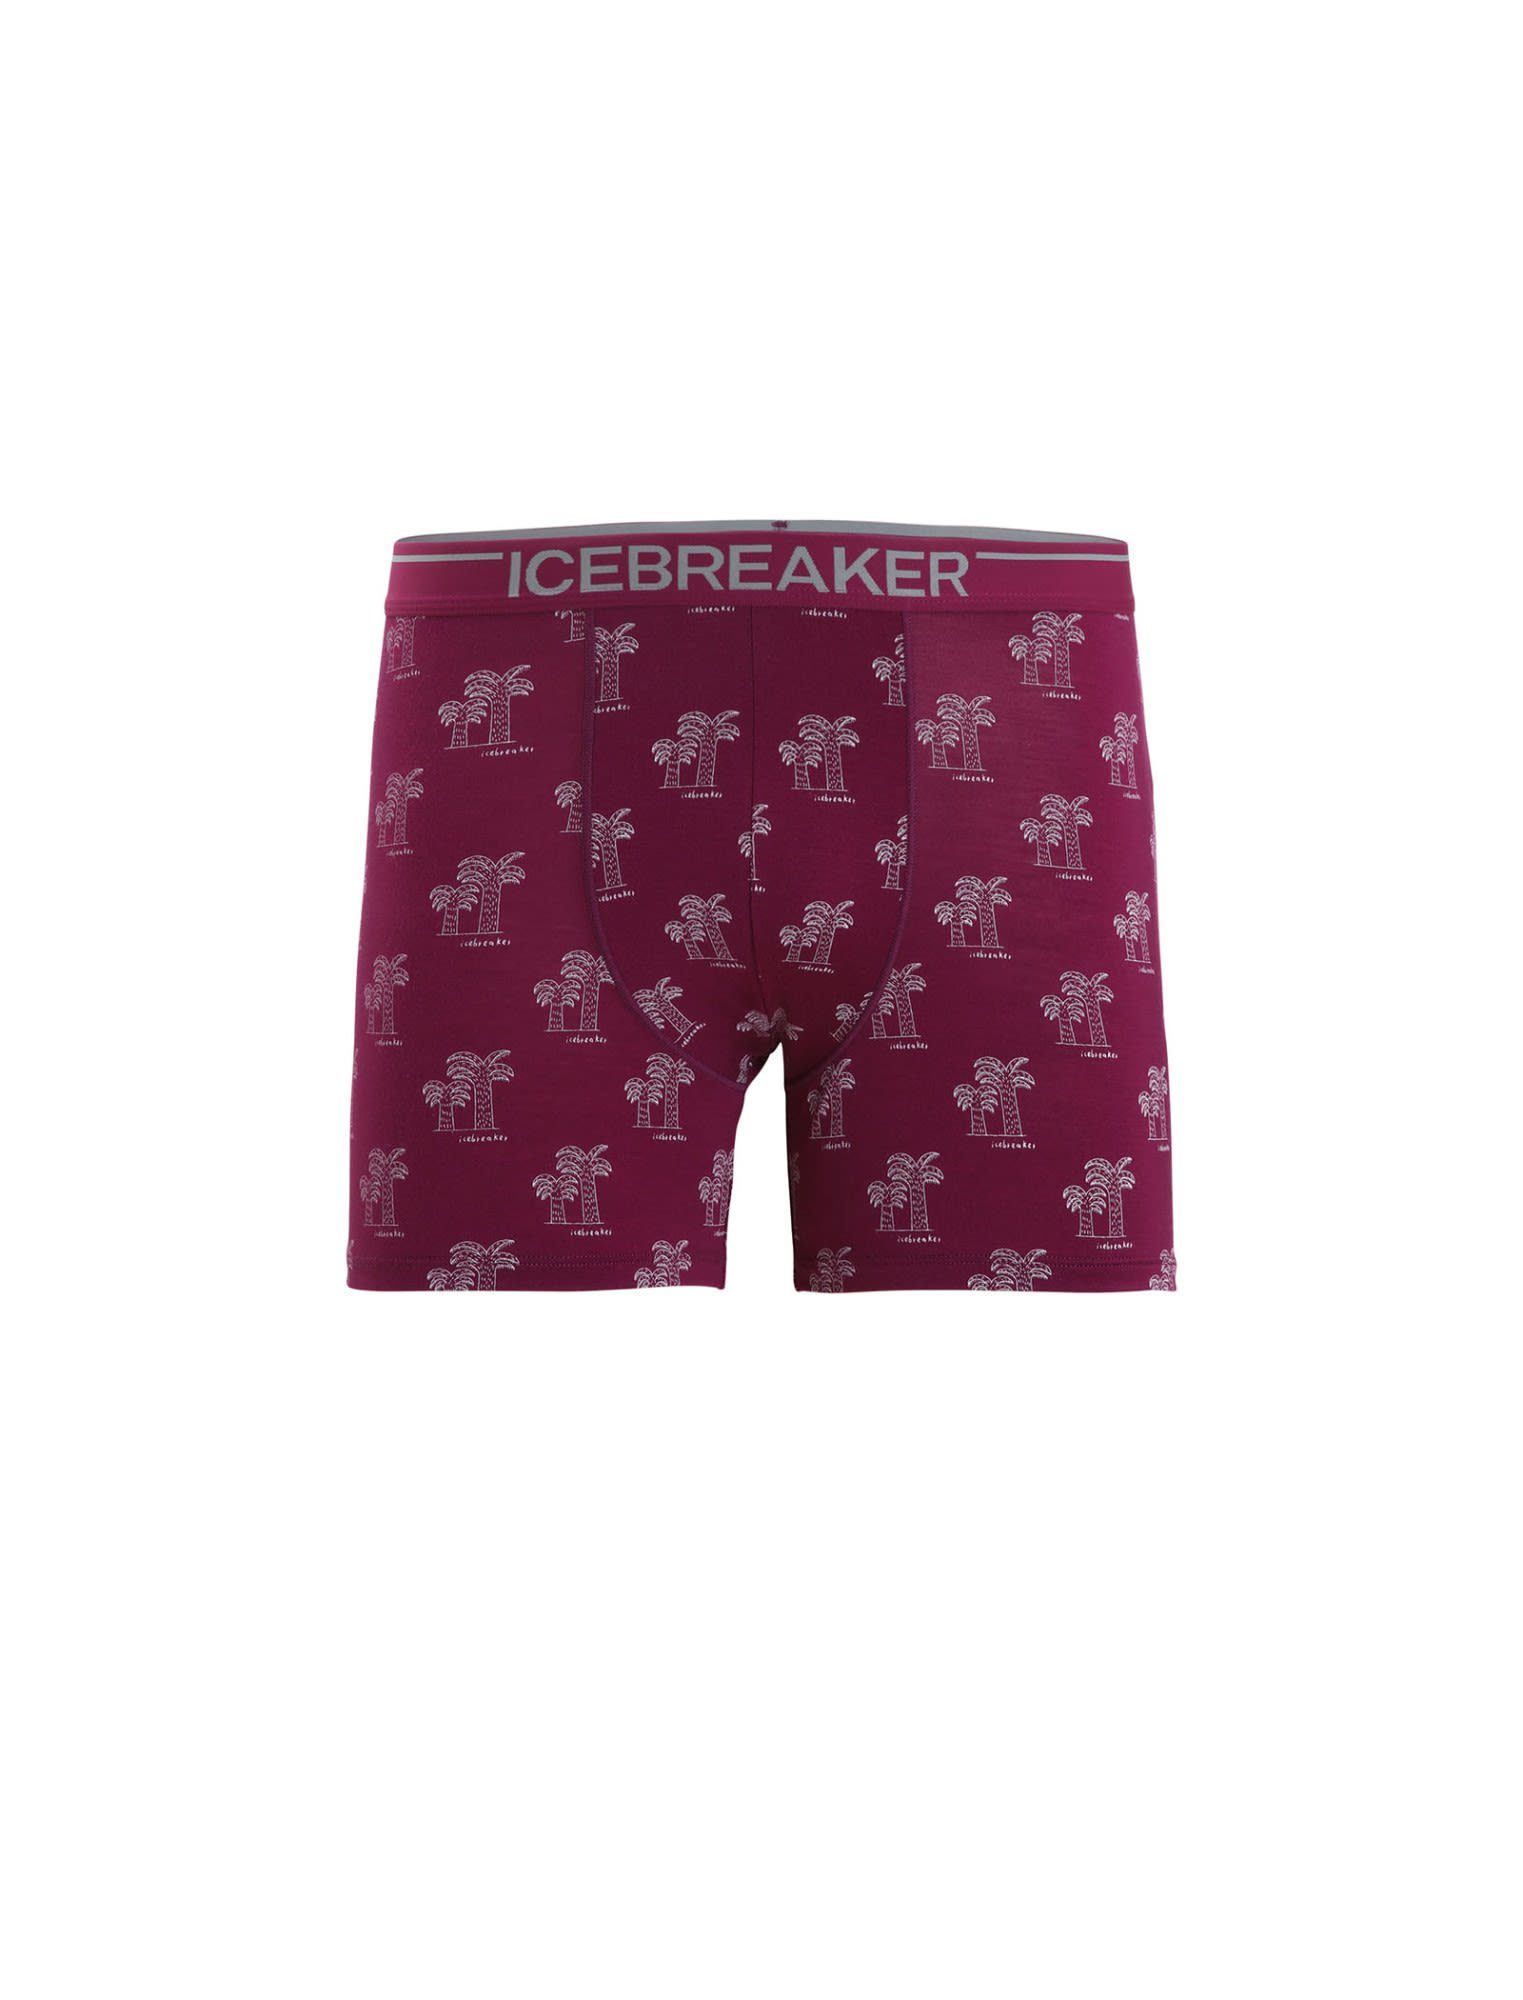 Icebreaker Boxers Lange Anatomica Berry M AOP Herren - Unterhose Go Icebreaker Kurze